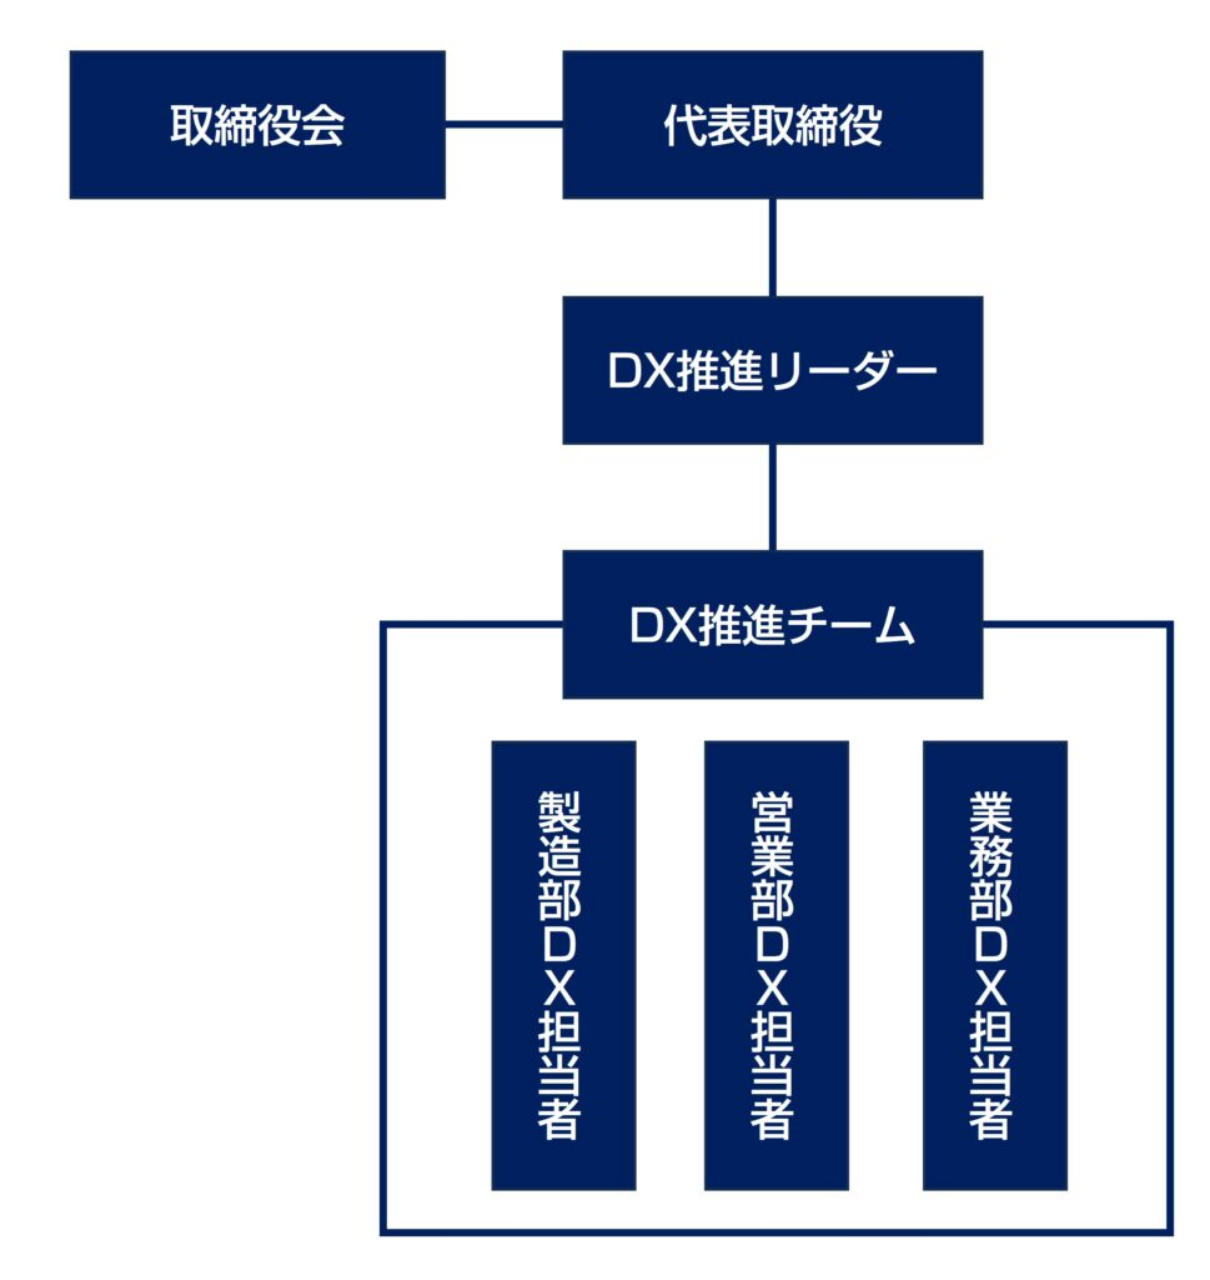 DX推進のための組織図